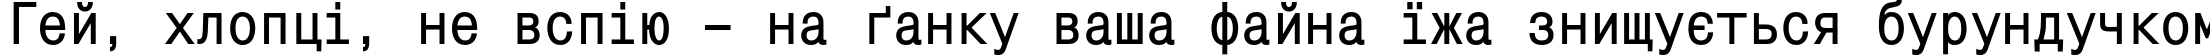 Пример написания шрифтом MonoCondensedC Bold текста на украинском